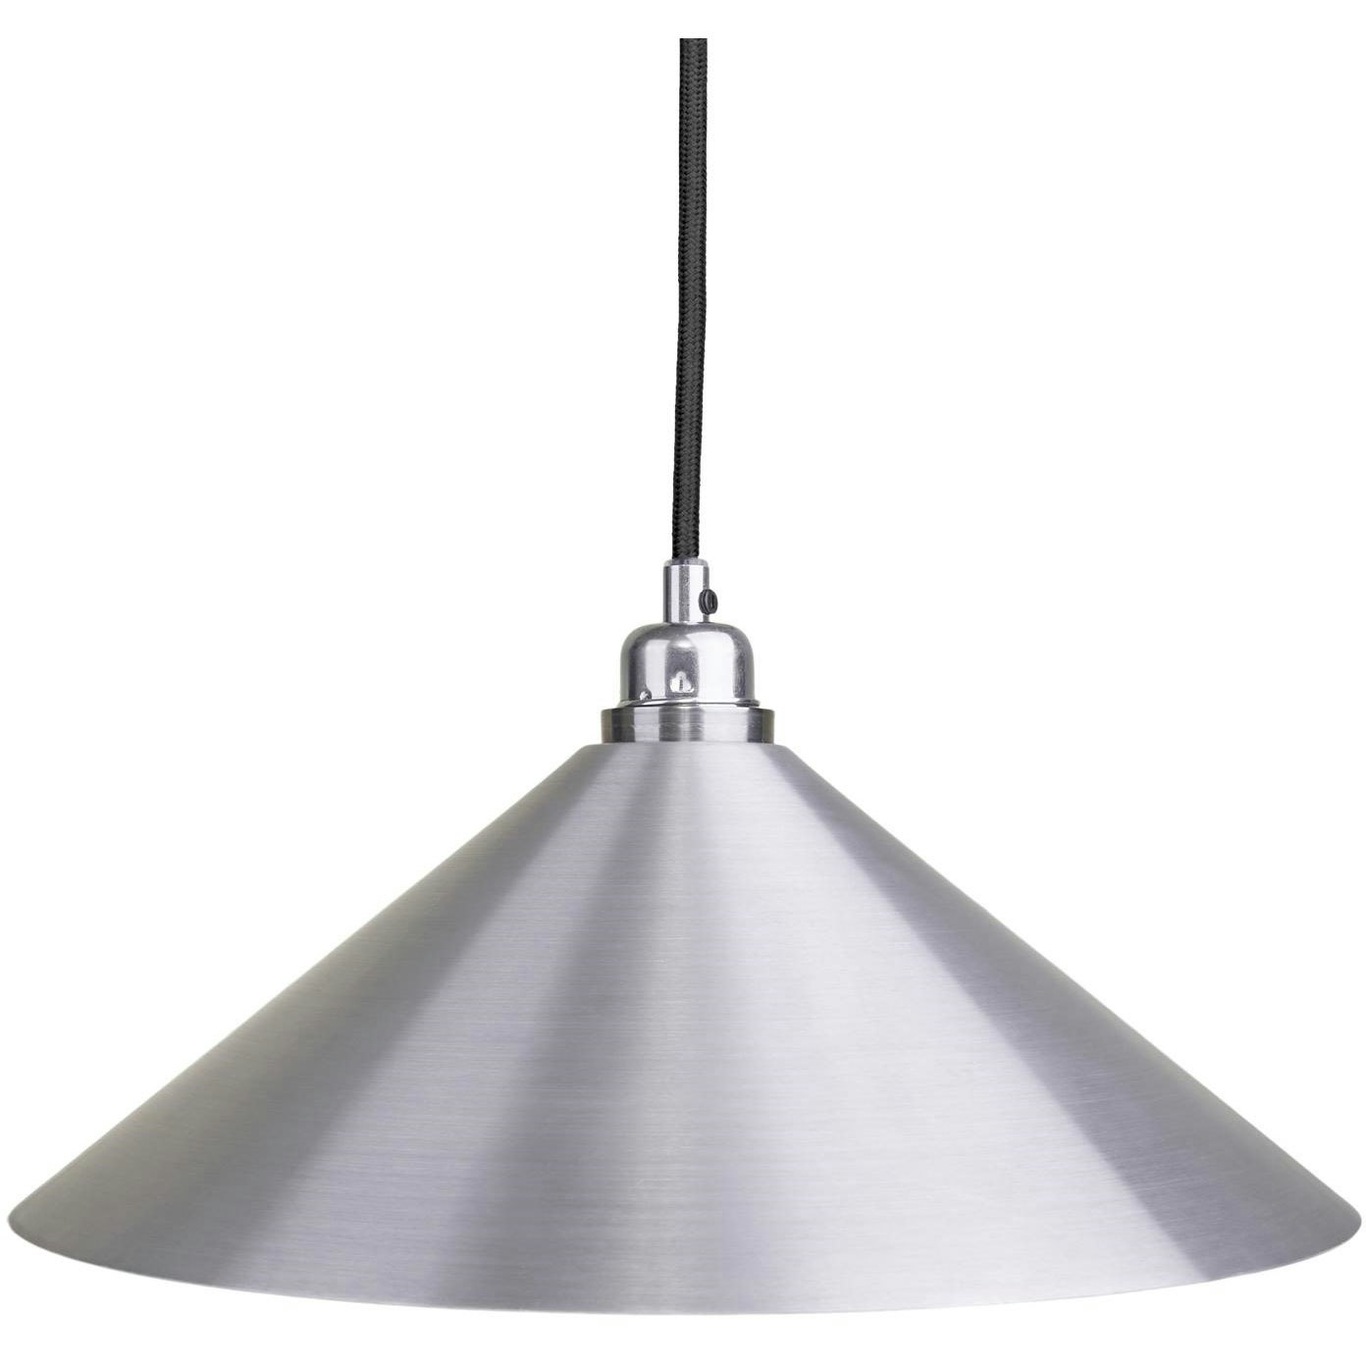 Cone Hanglamp 36 cm, Aluminium